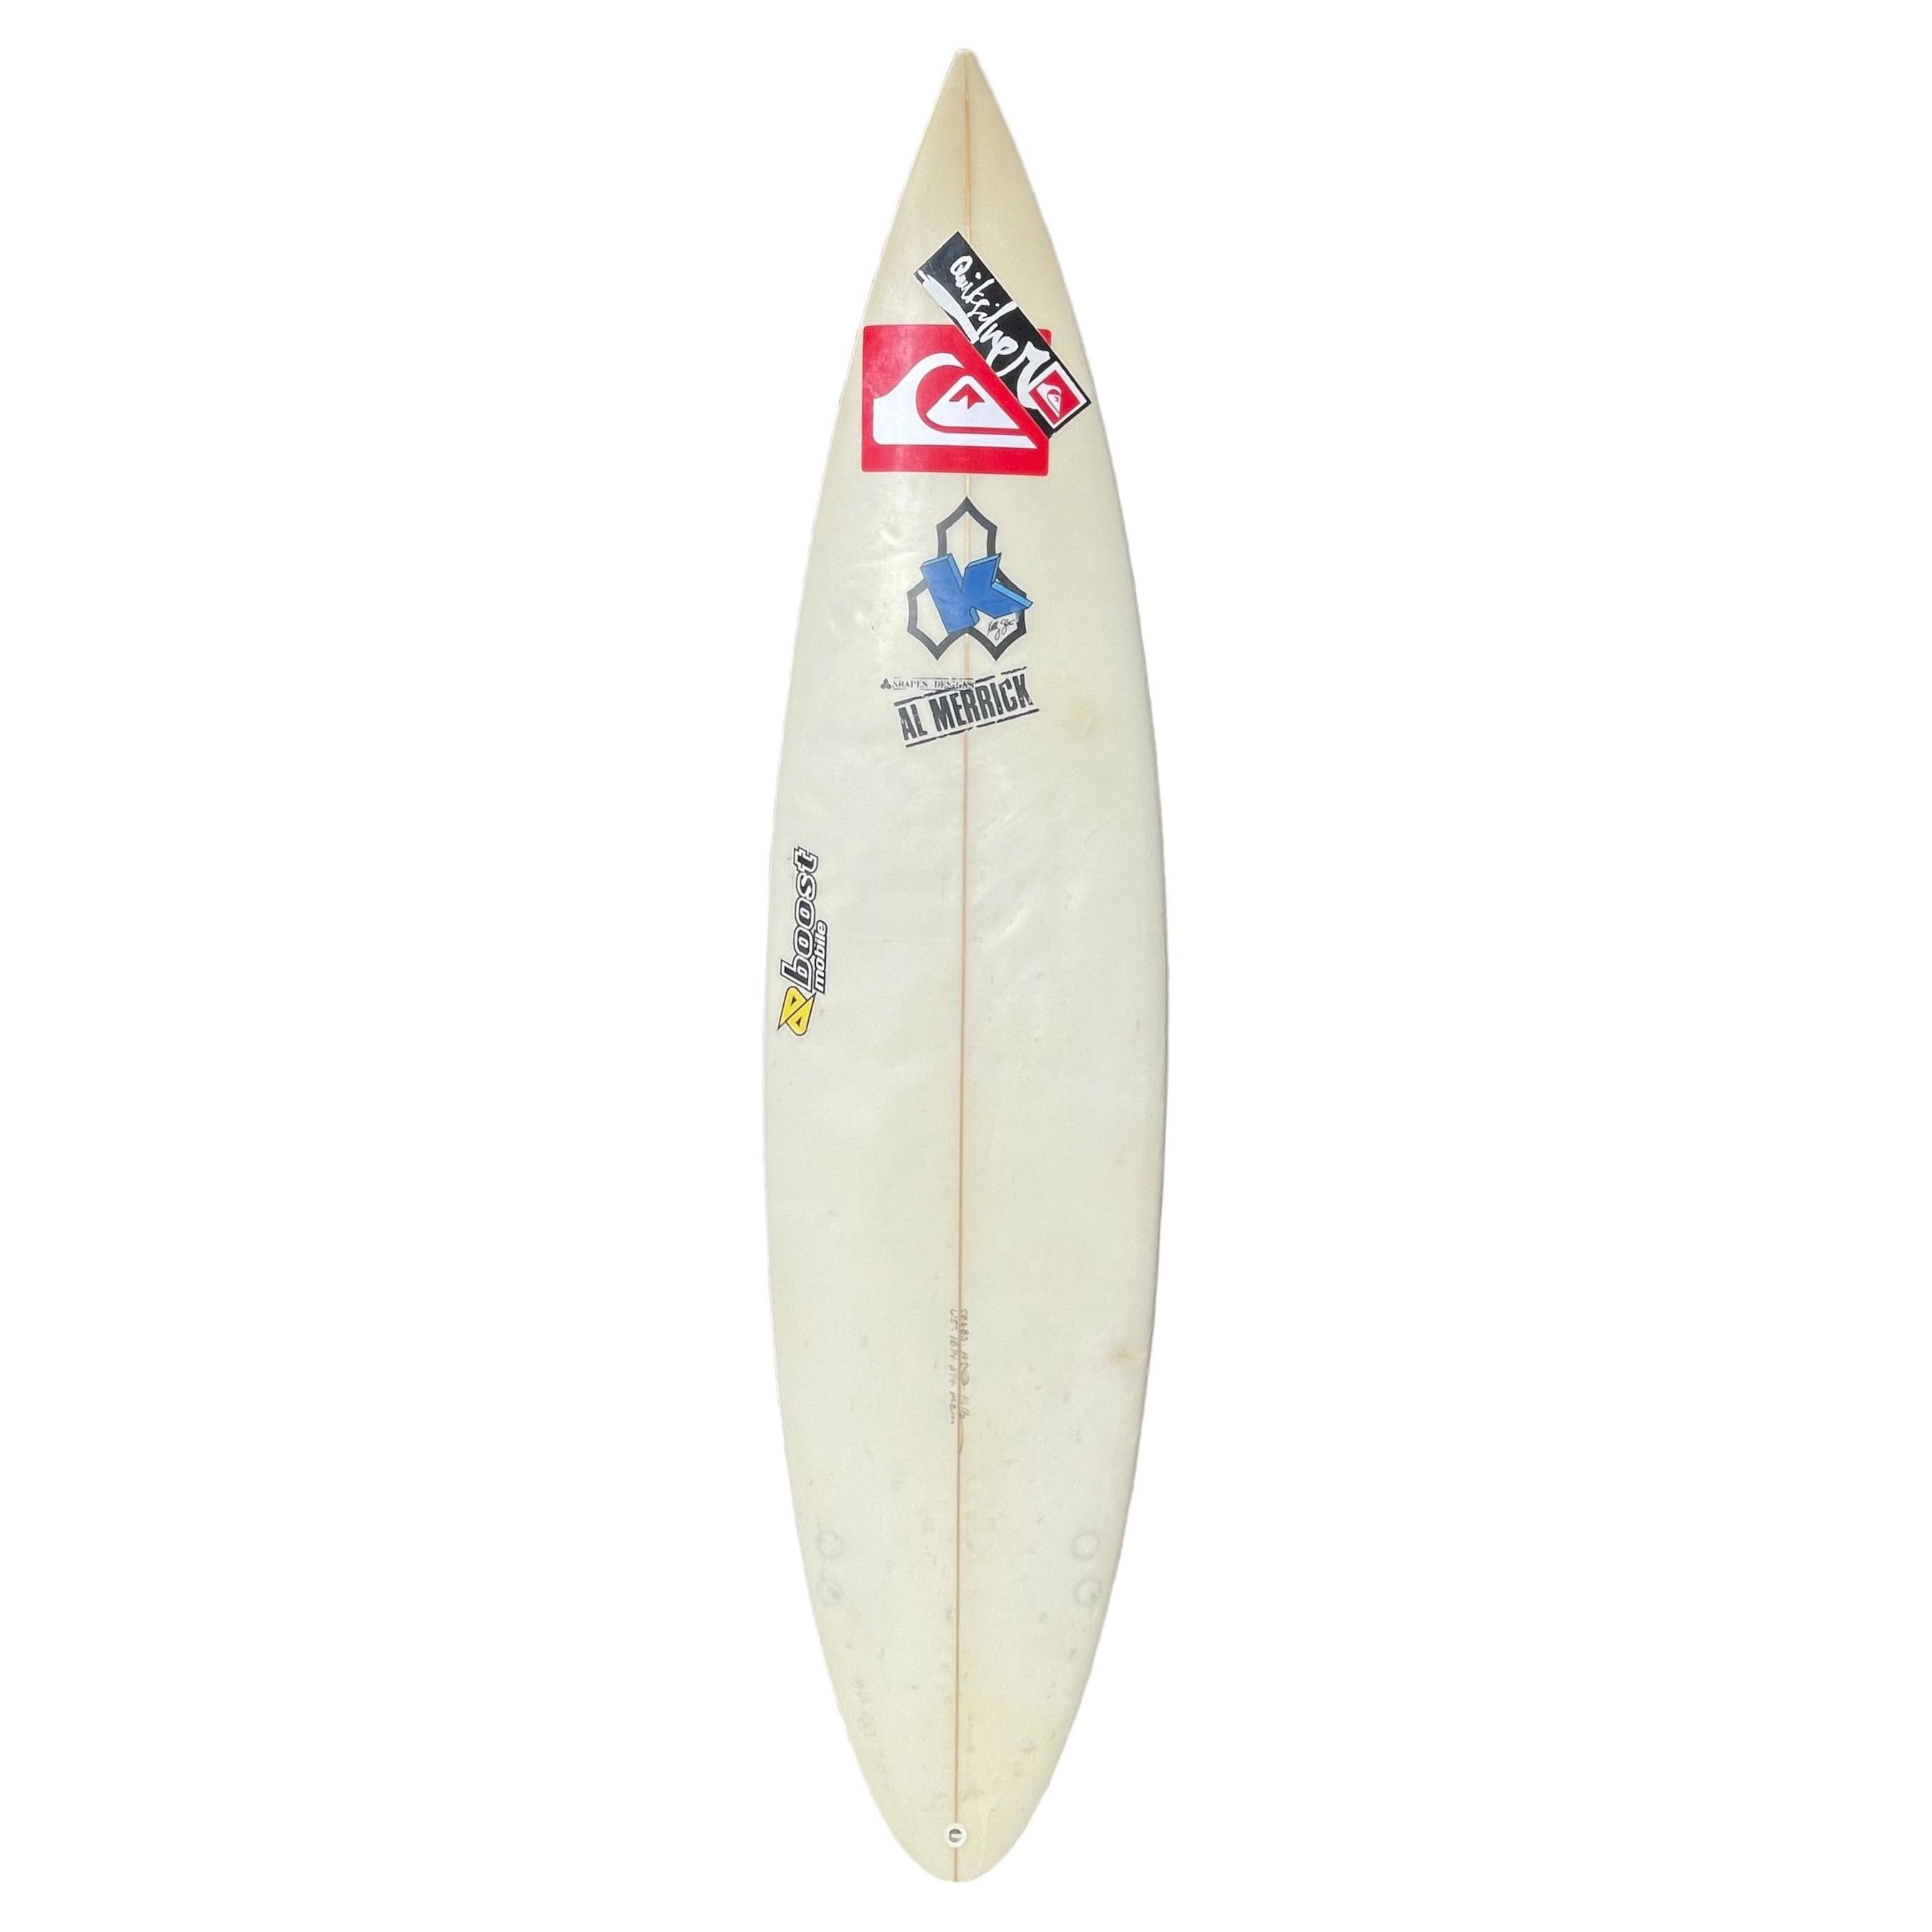 Planche de surf personnelle de Kelly Slater, champion du monde 11x, utilisée lors de compétitions  en vente